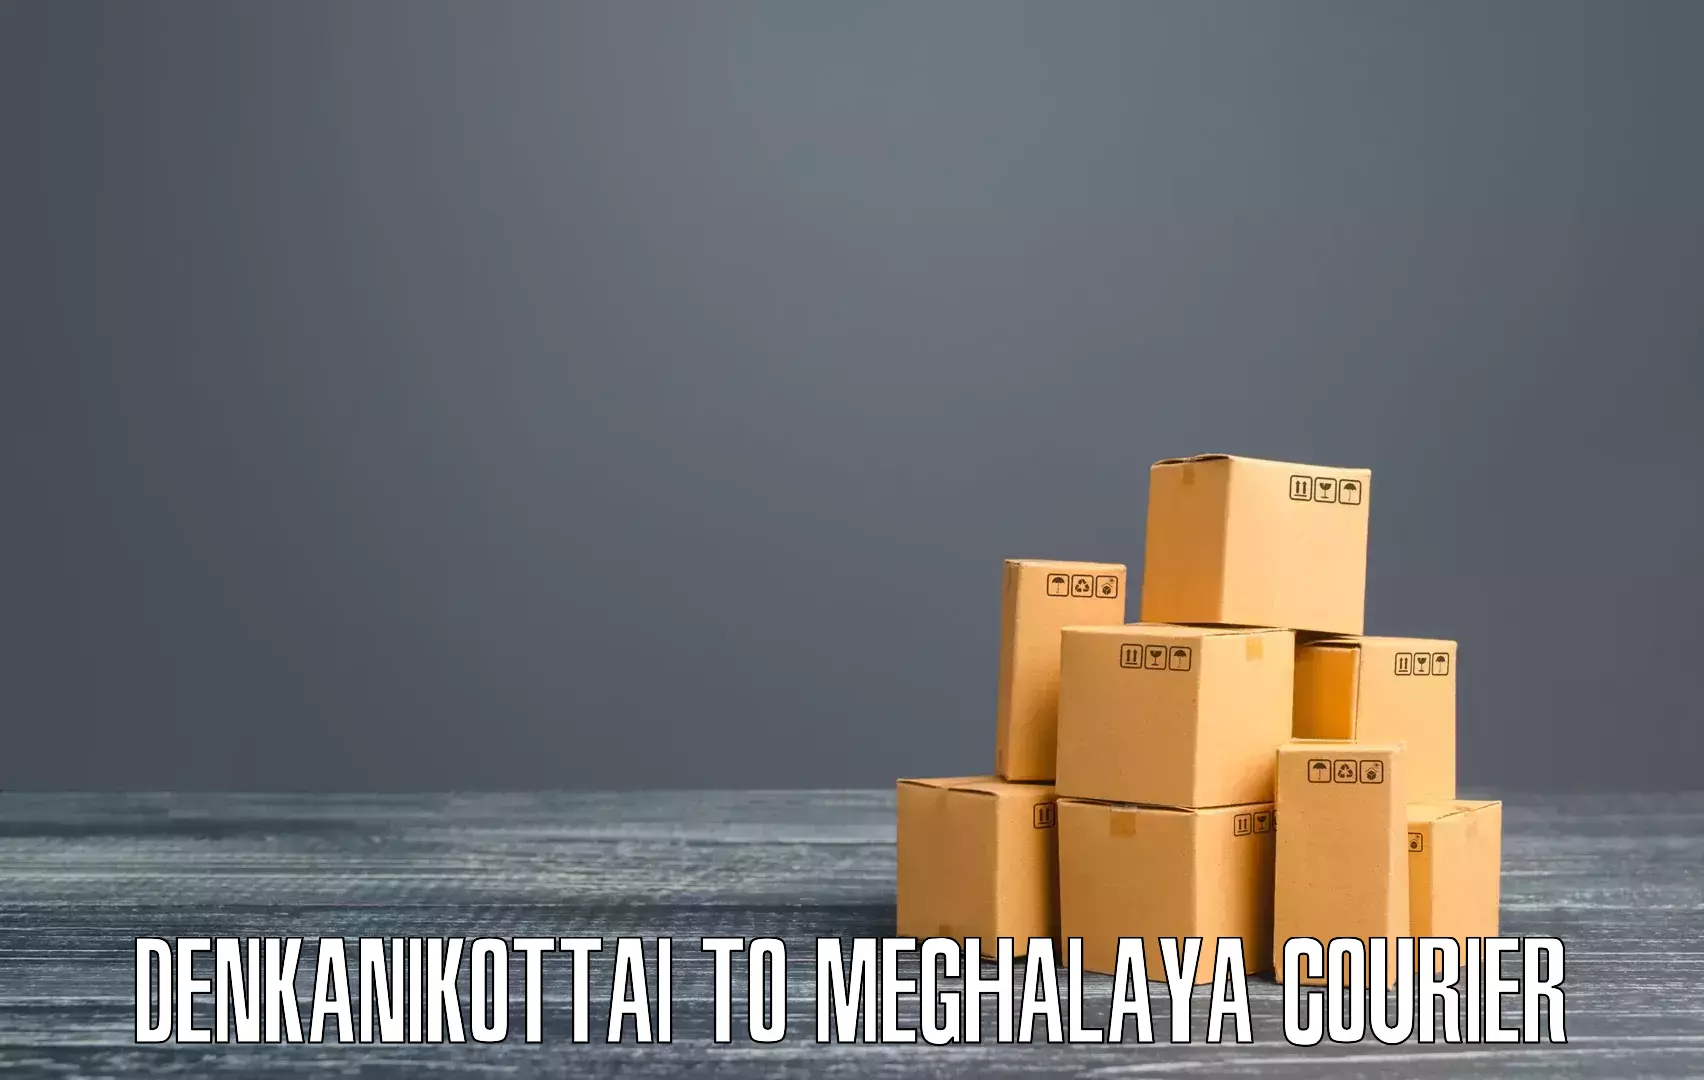 Door-to-door shipment Denkanikottai to Meghalaya